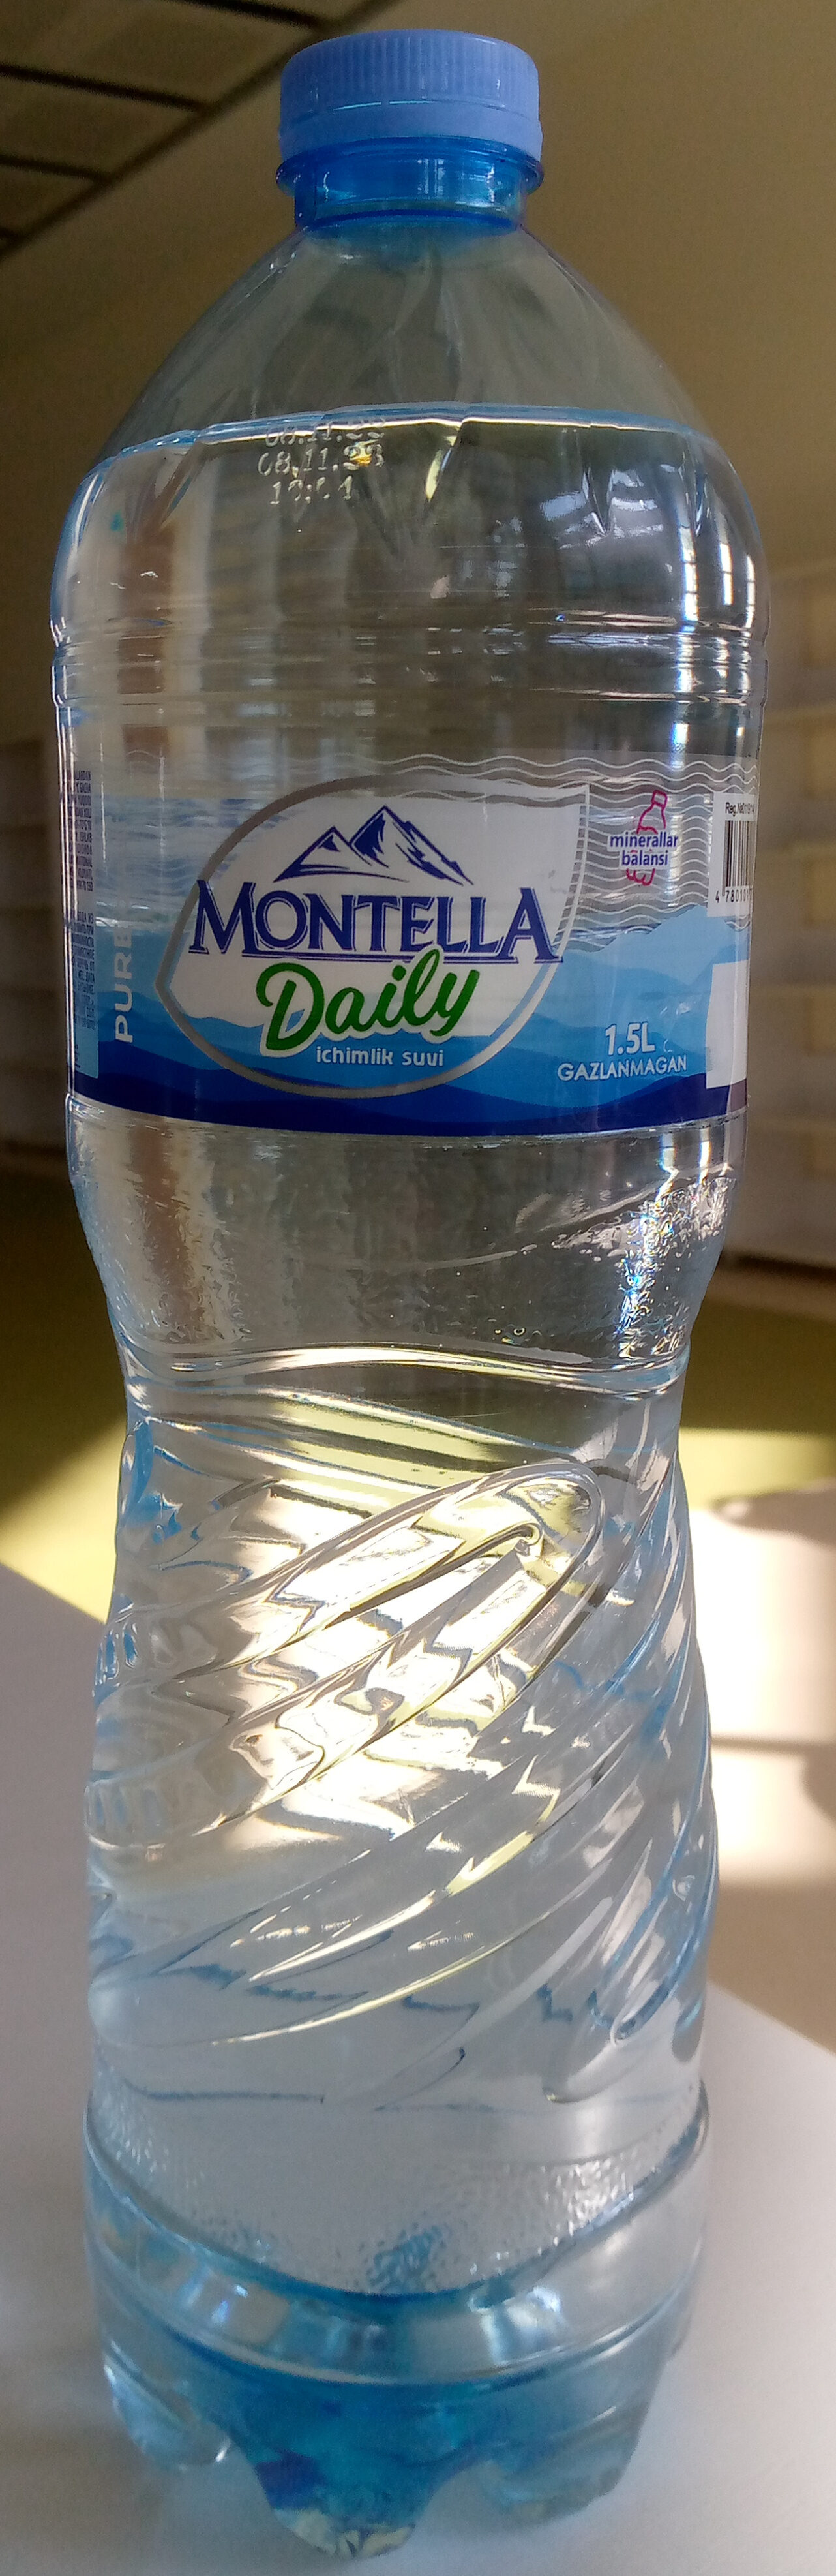 Montella Daily ichimlik suvi - Product